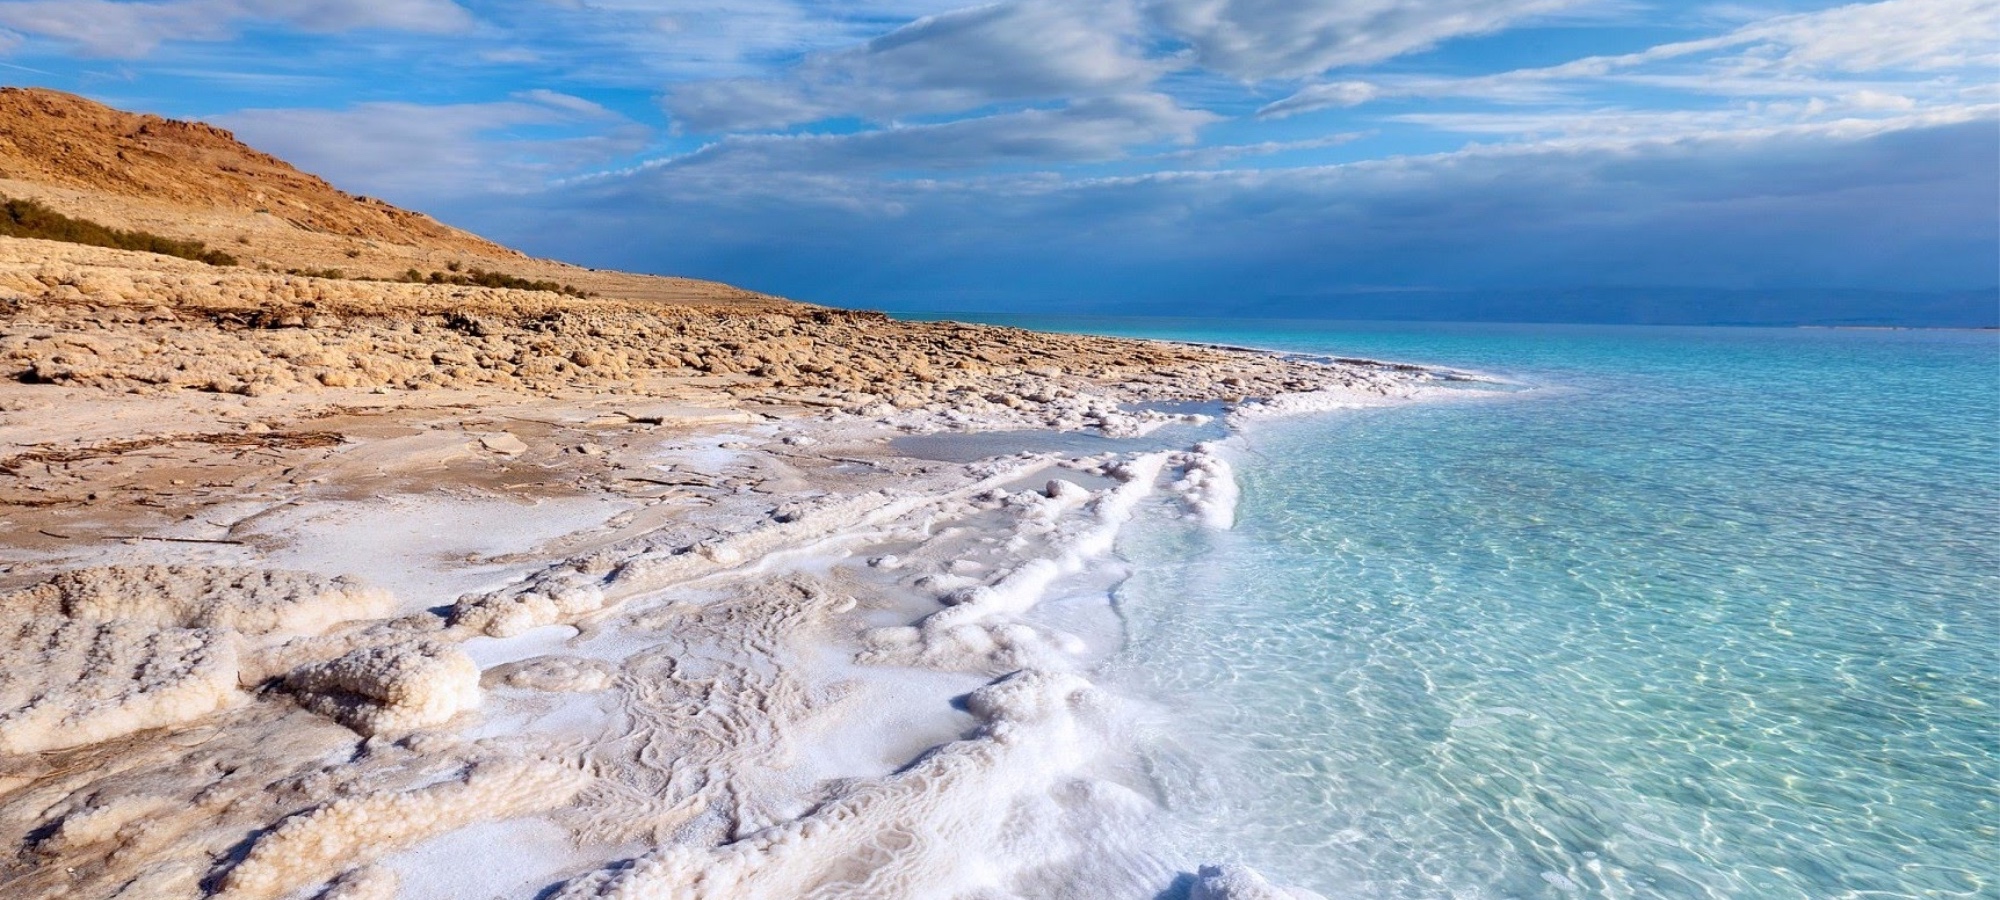 Sweimeh (Dead Sea)